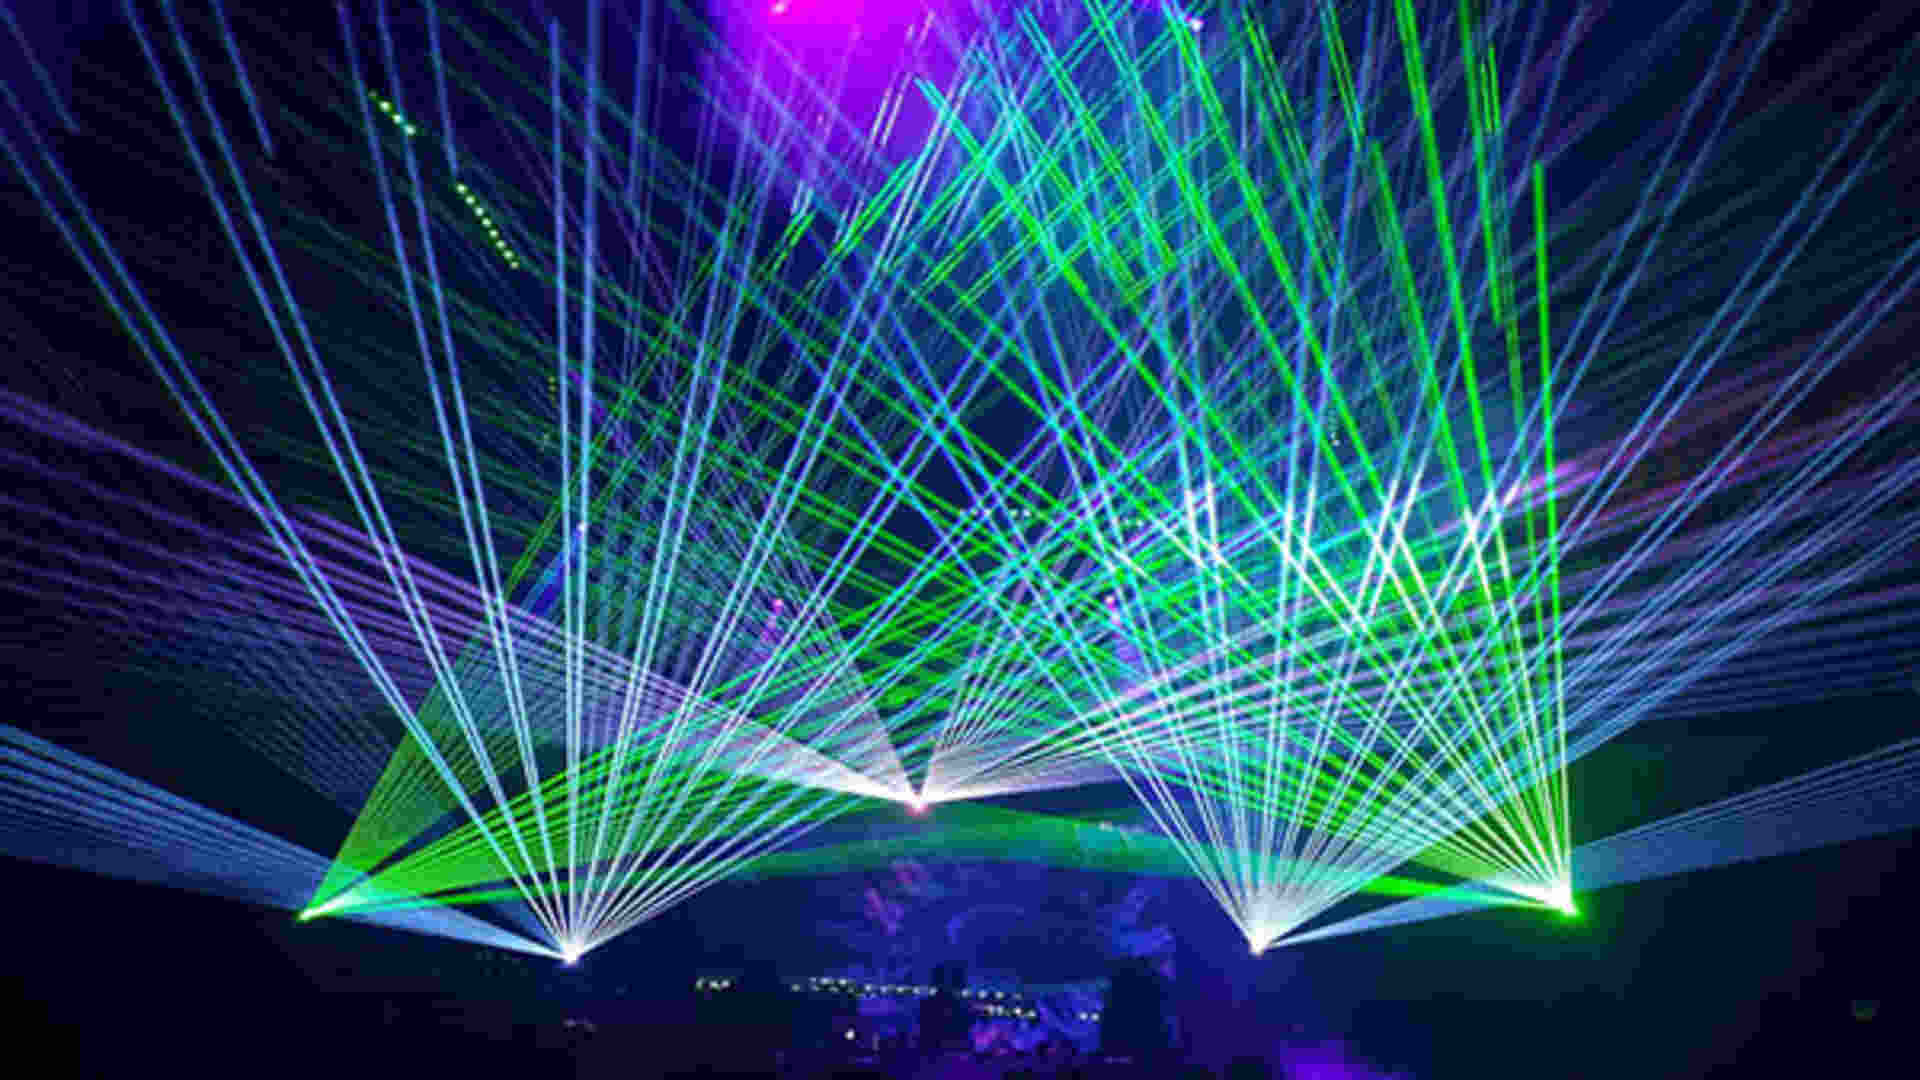 Mal instalados, lasers de festa podem danificar visão e dar prejuízos em mais de R$ 12 mil